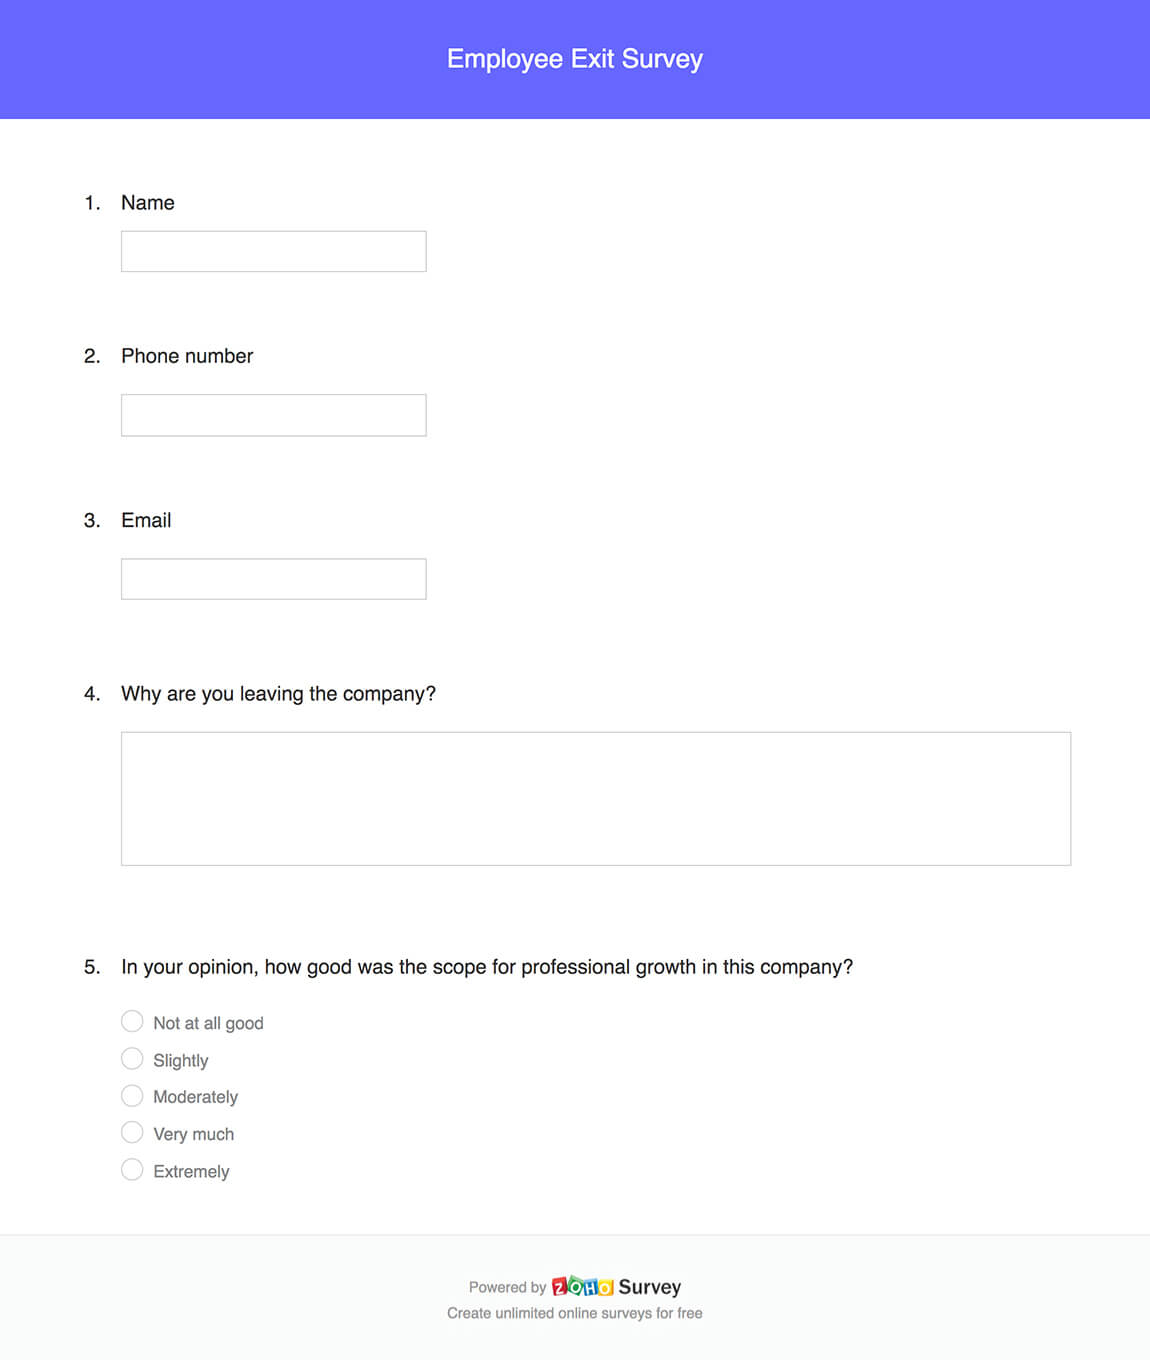 Employee exit survey questionnaire template